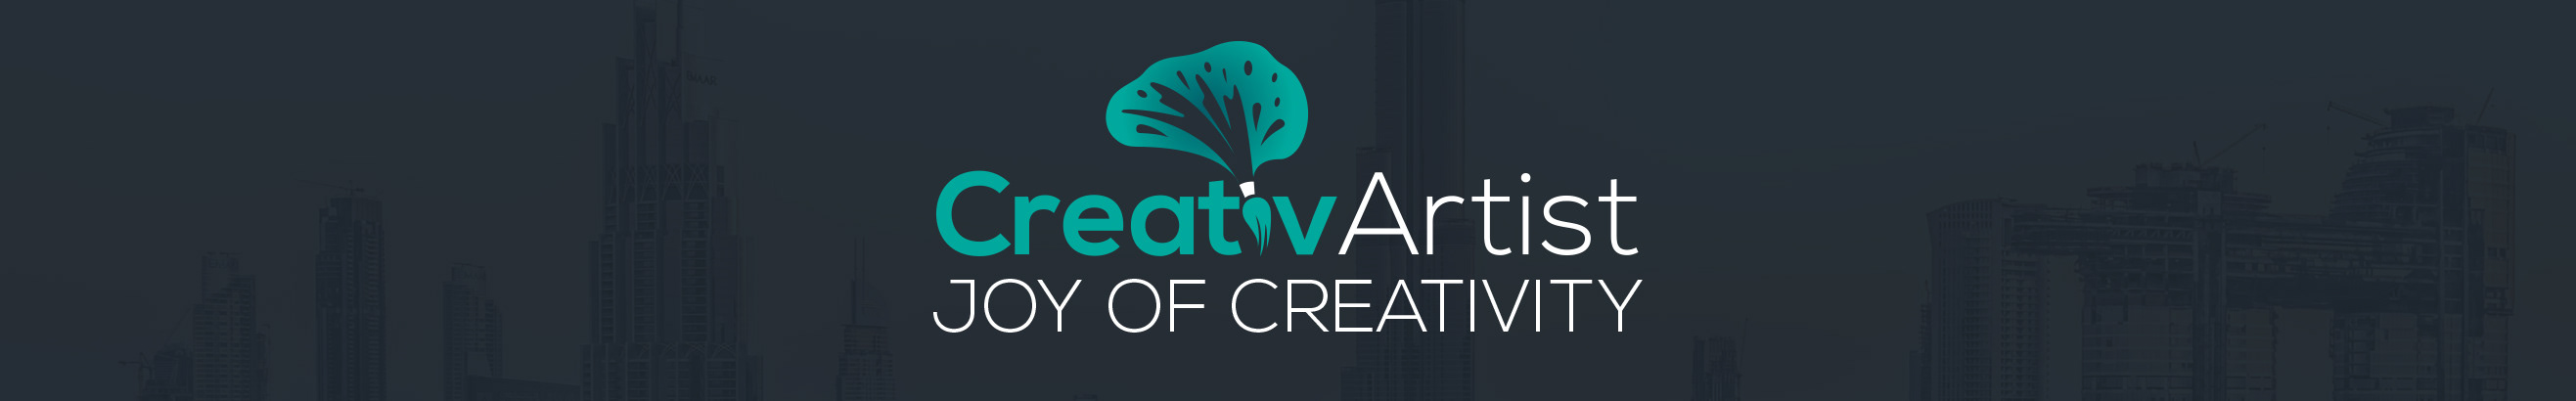 Profil-Banner von Creativ artist